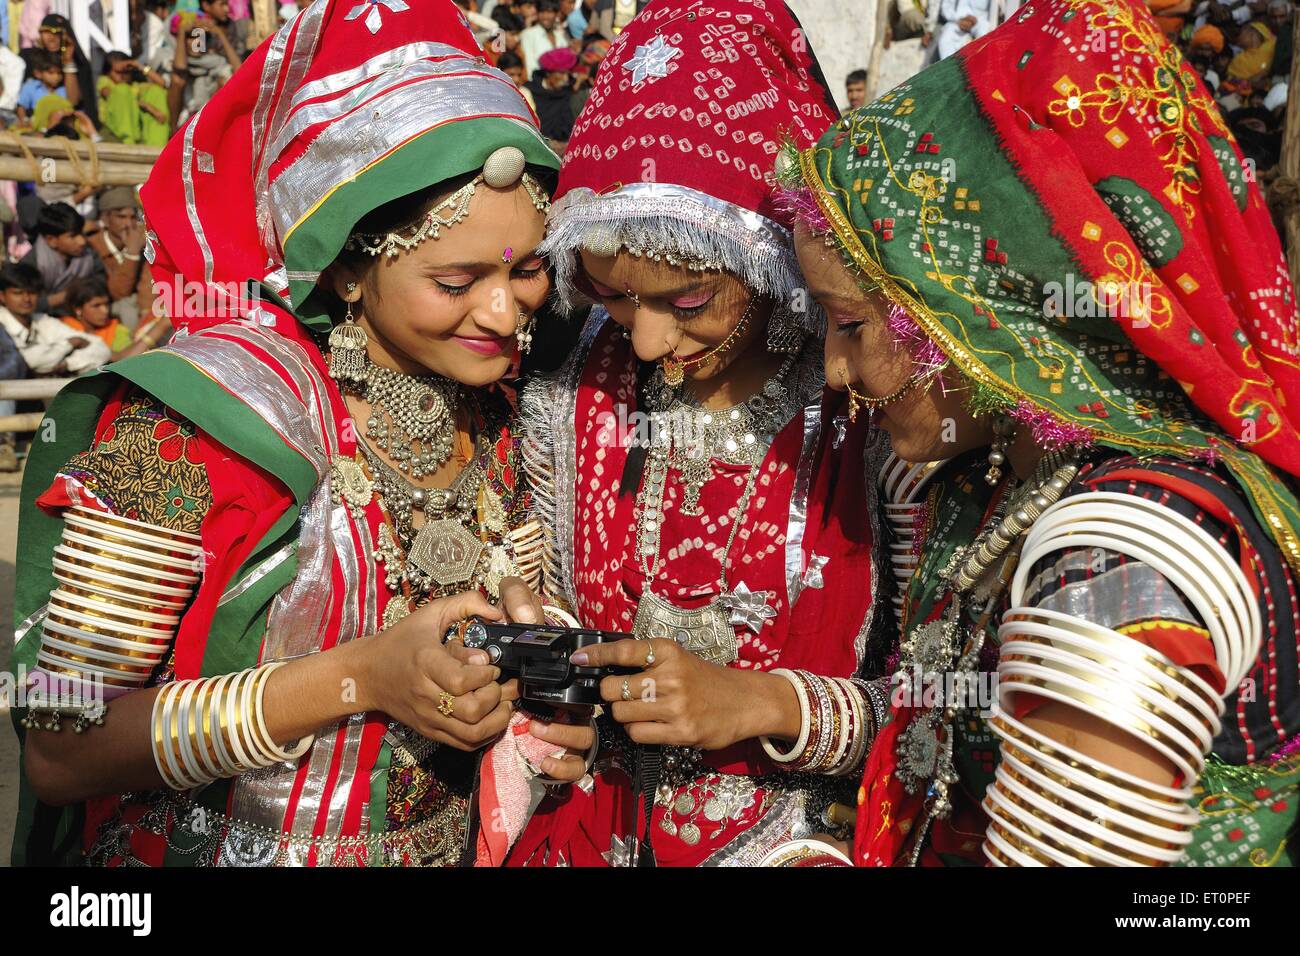 In des bijoux traditionnels et costumes rajasthani looking at camera ; Pushkar Rajasthan Inde ; juste ; PAS DE MR Banque D'Images